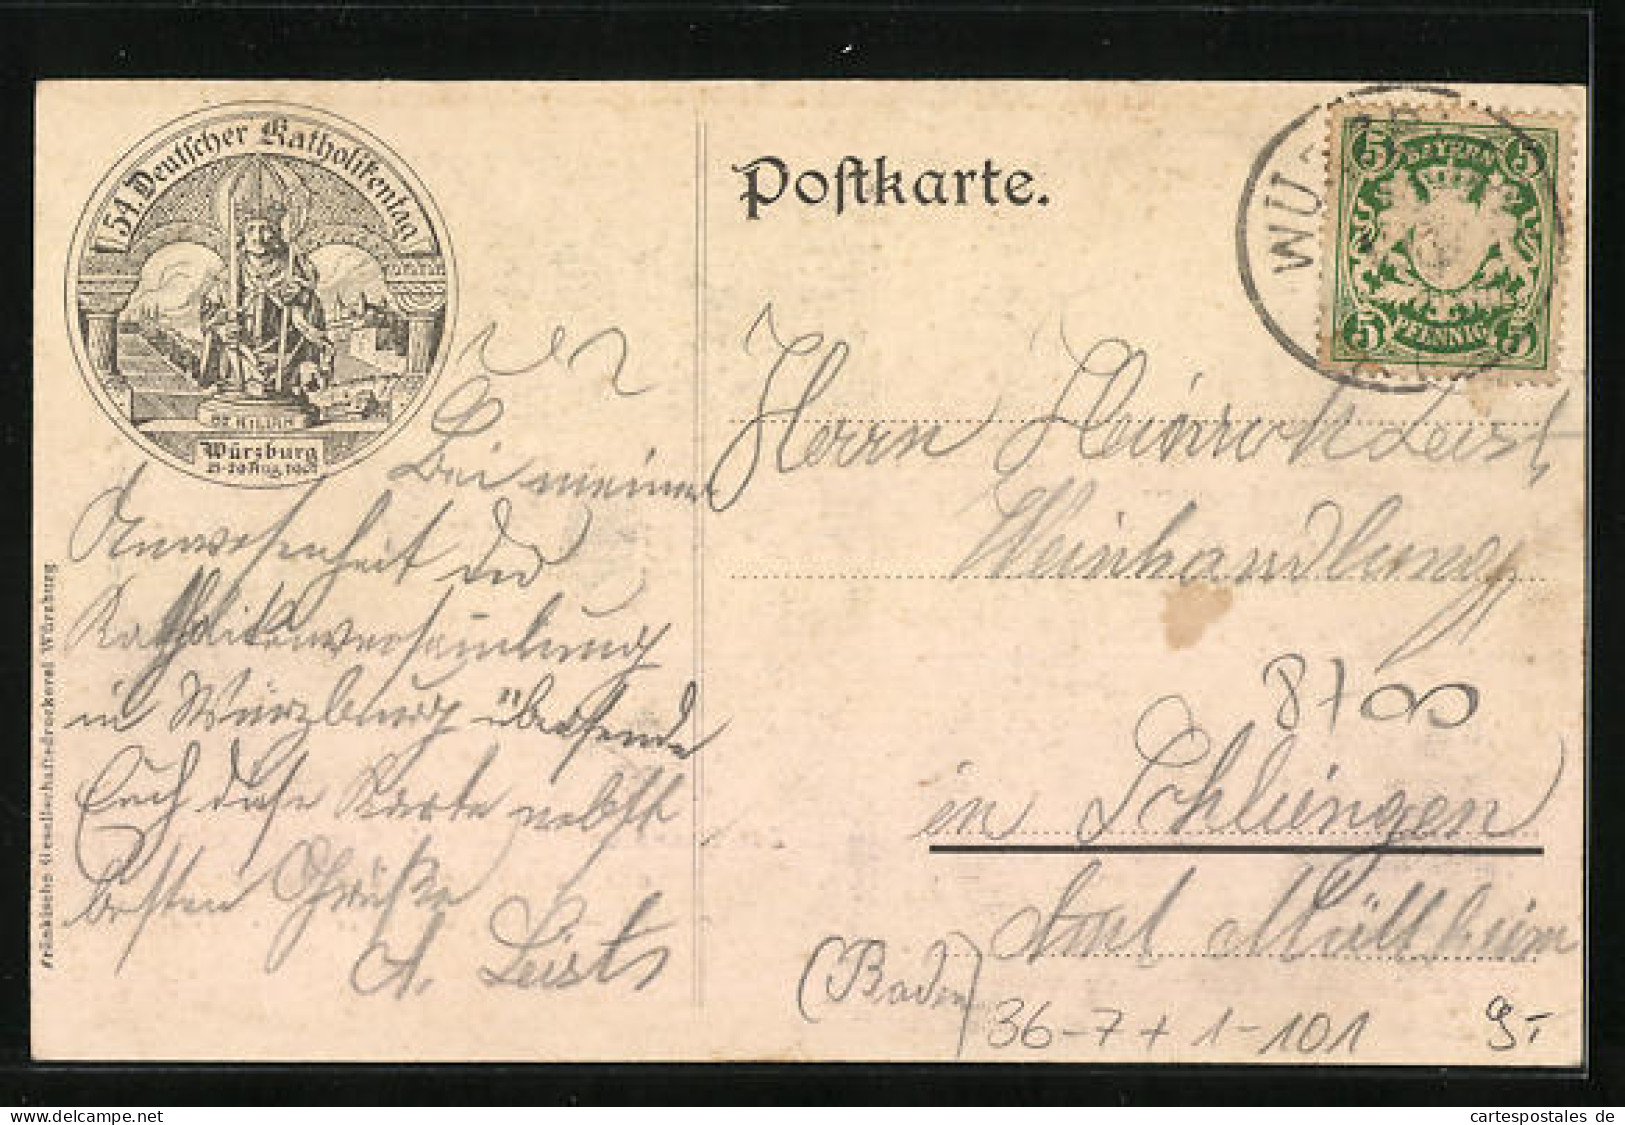 AK Würzburg, 54. Generalversammlung Der Katholiken Deutschlands 1907, Dom Und Neumünsterkirche, Papst Pius X.  - Other & Unclassified